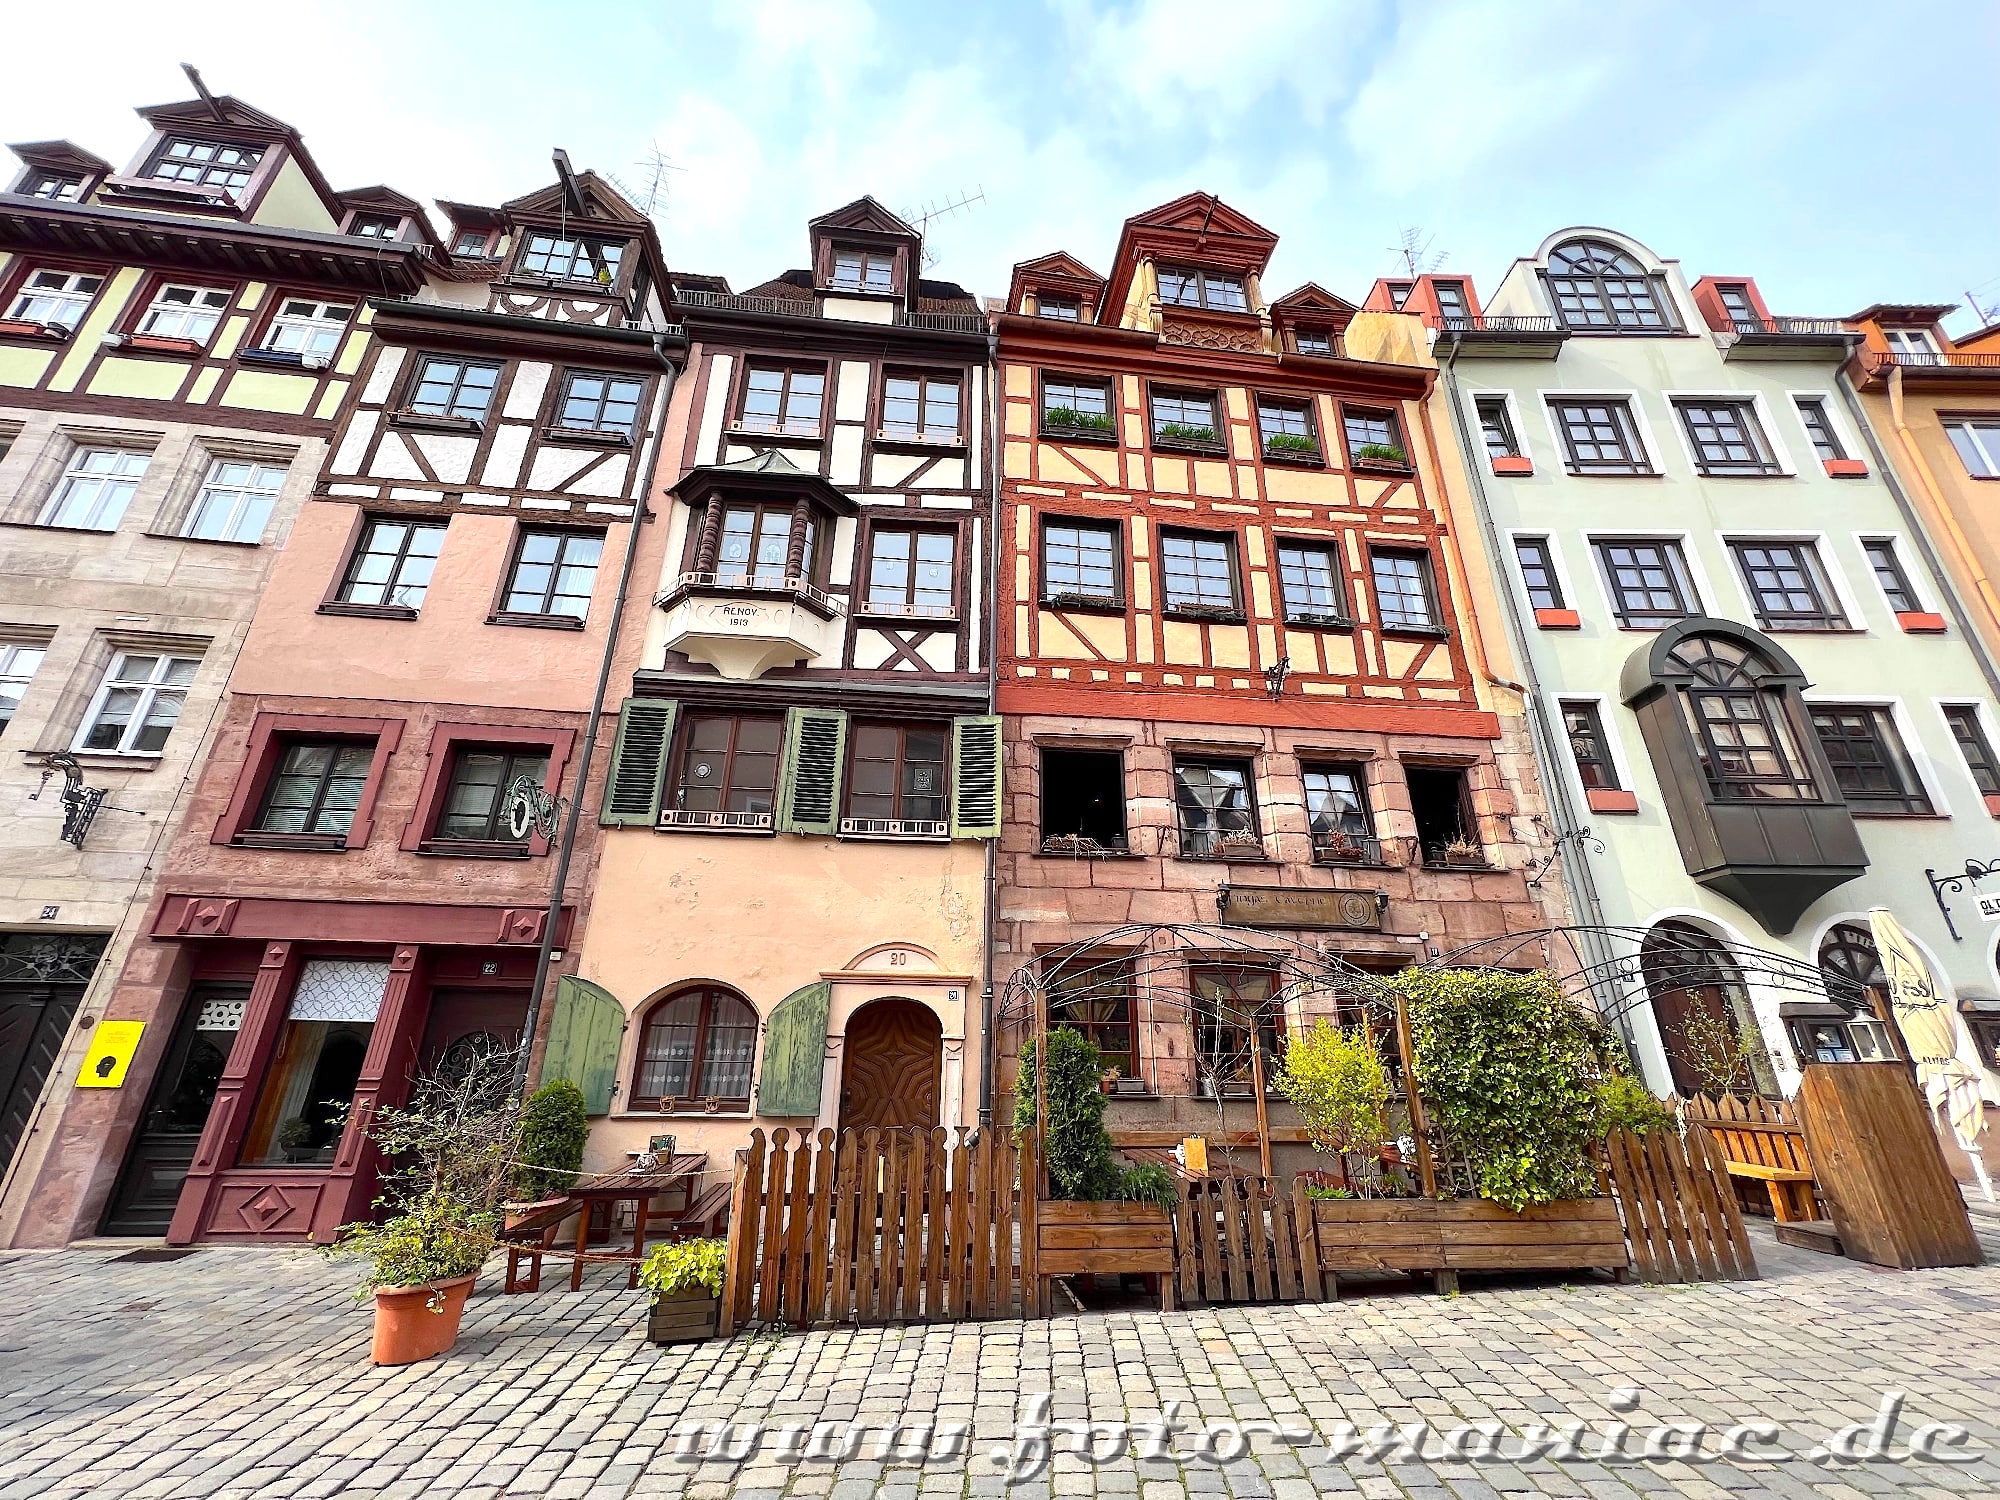 Spaziergang durch Nürnberg: die hübschen Fachwerkhäuser in der Weißgerbergasse